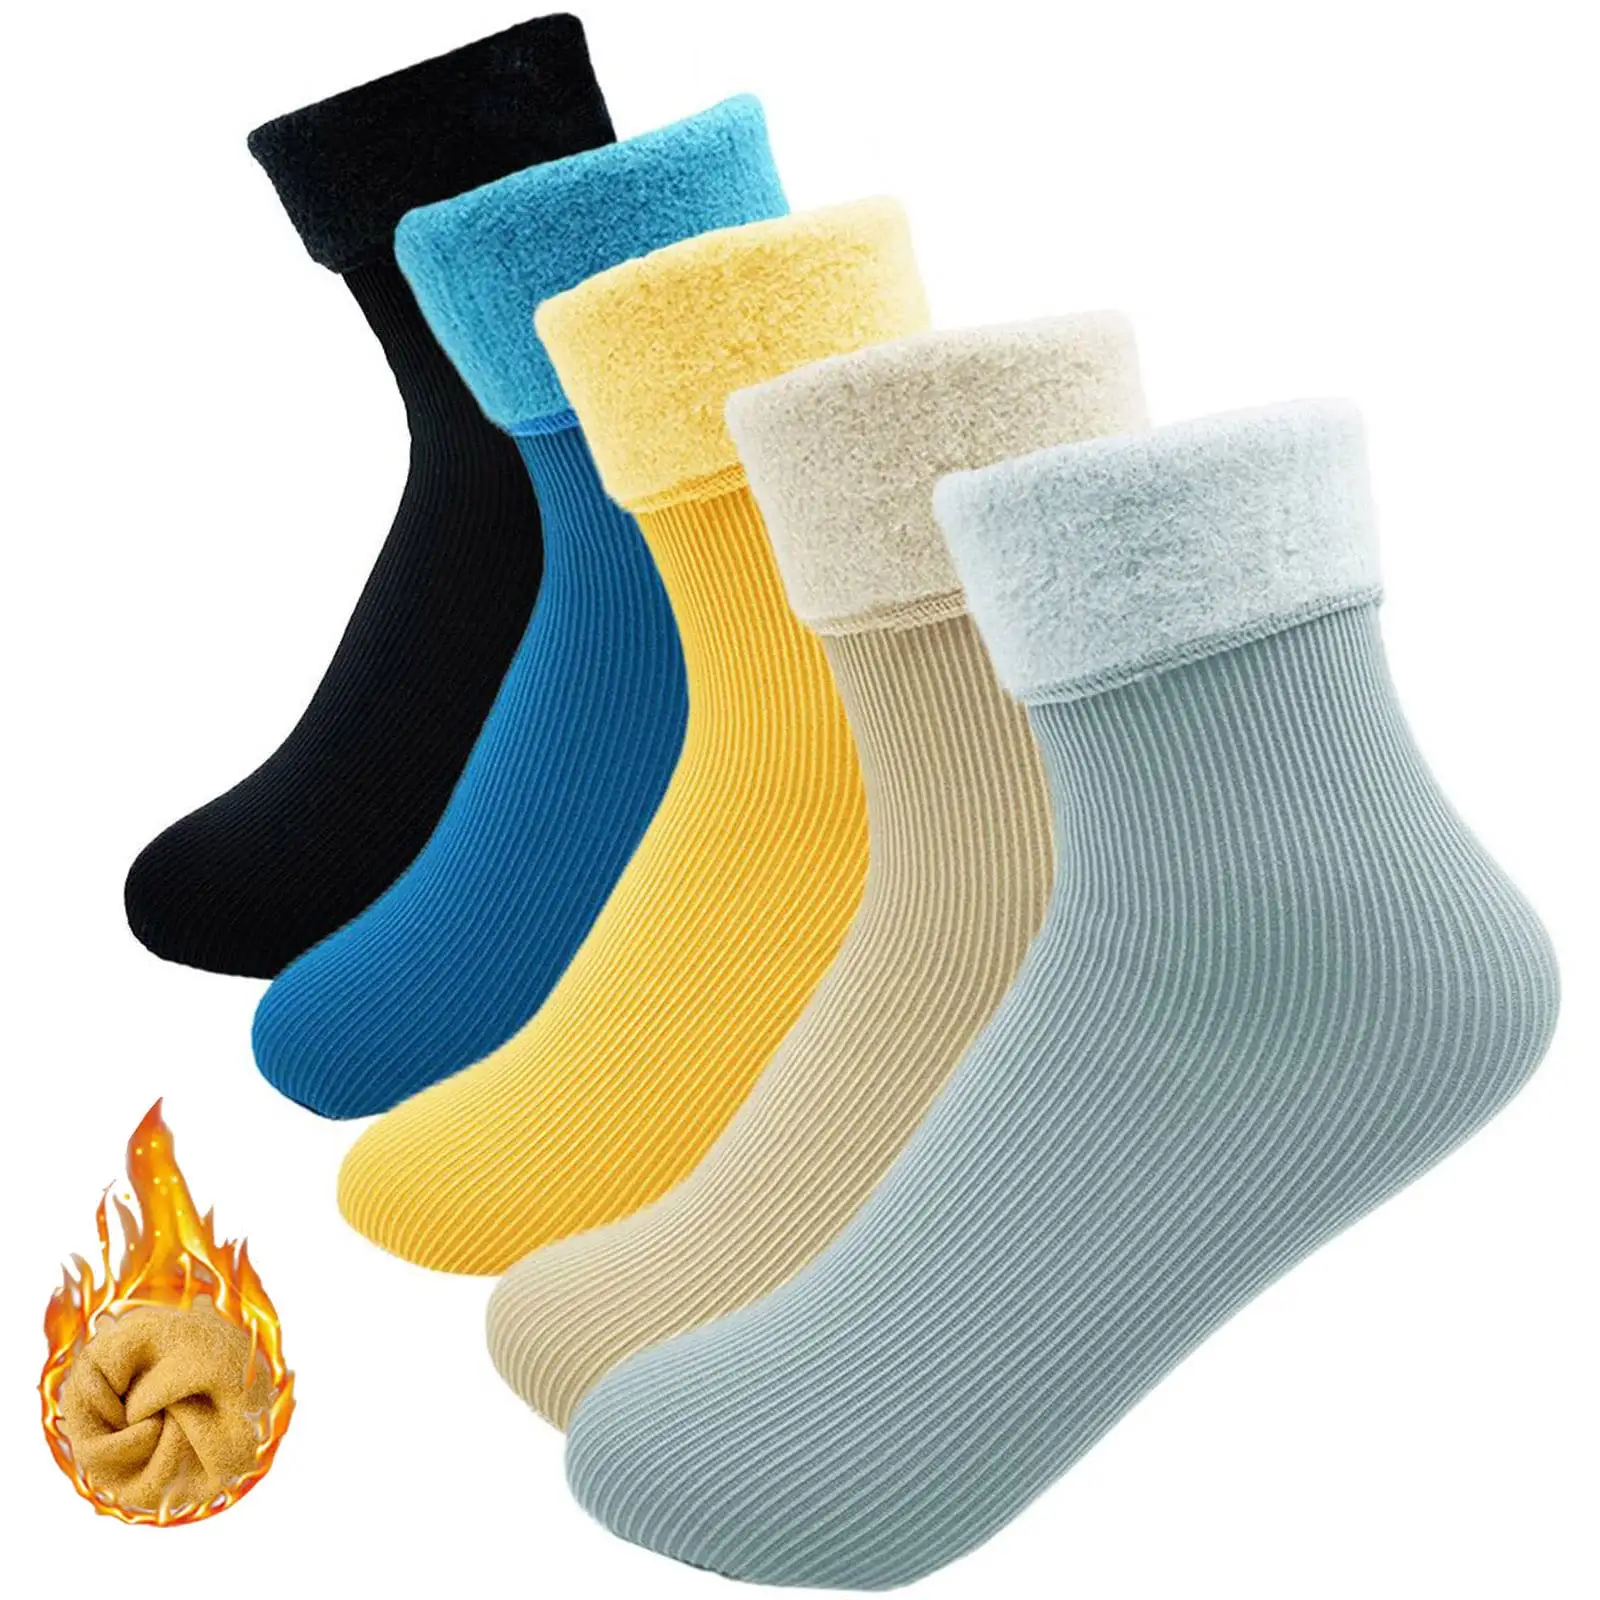 Grosso Inverno Quente Meias Térmicas para Homens Crianças Respirável Fuzzy Slipper Wool Socks Mulheres